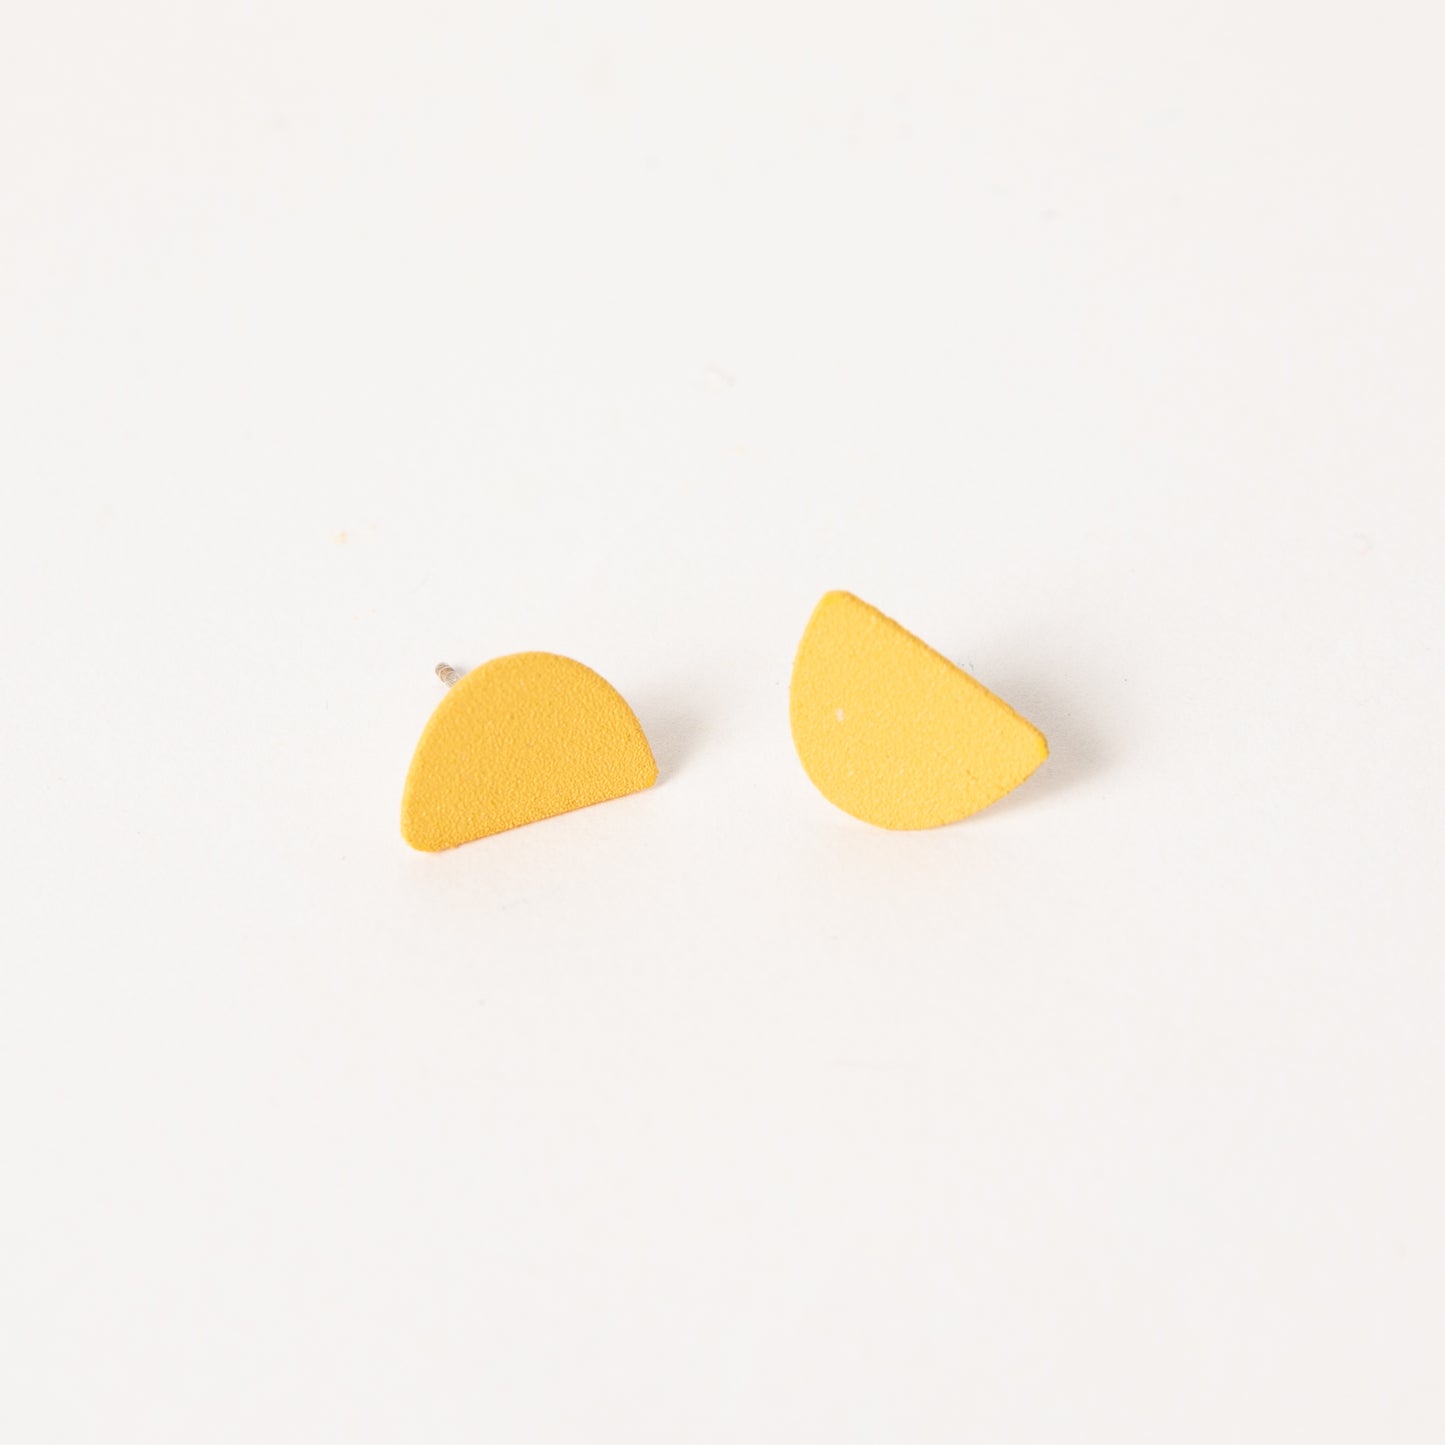 Mound earrings in marigold.